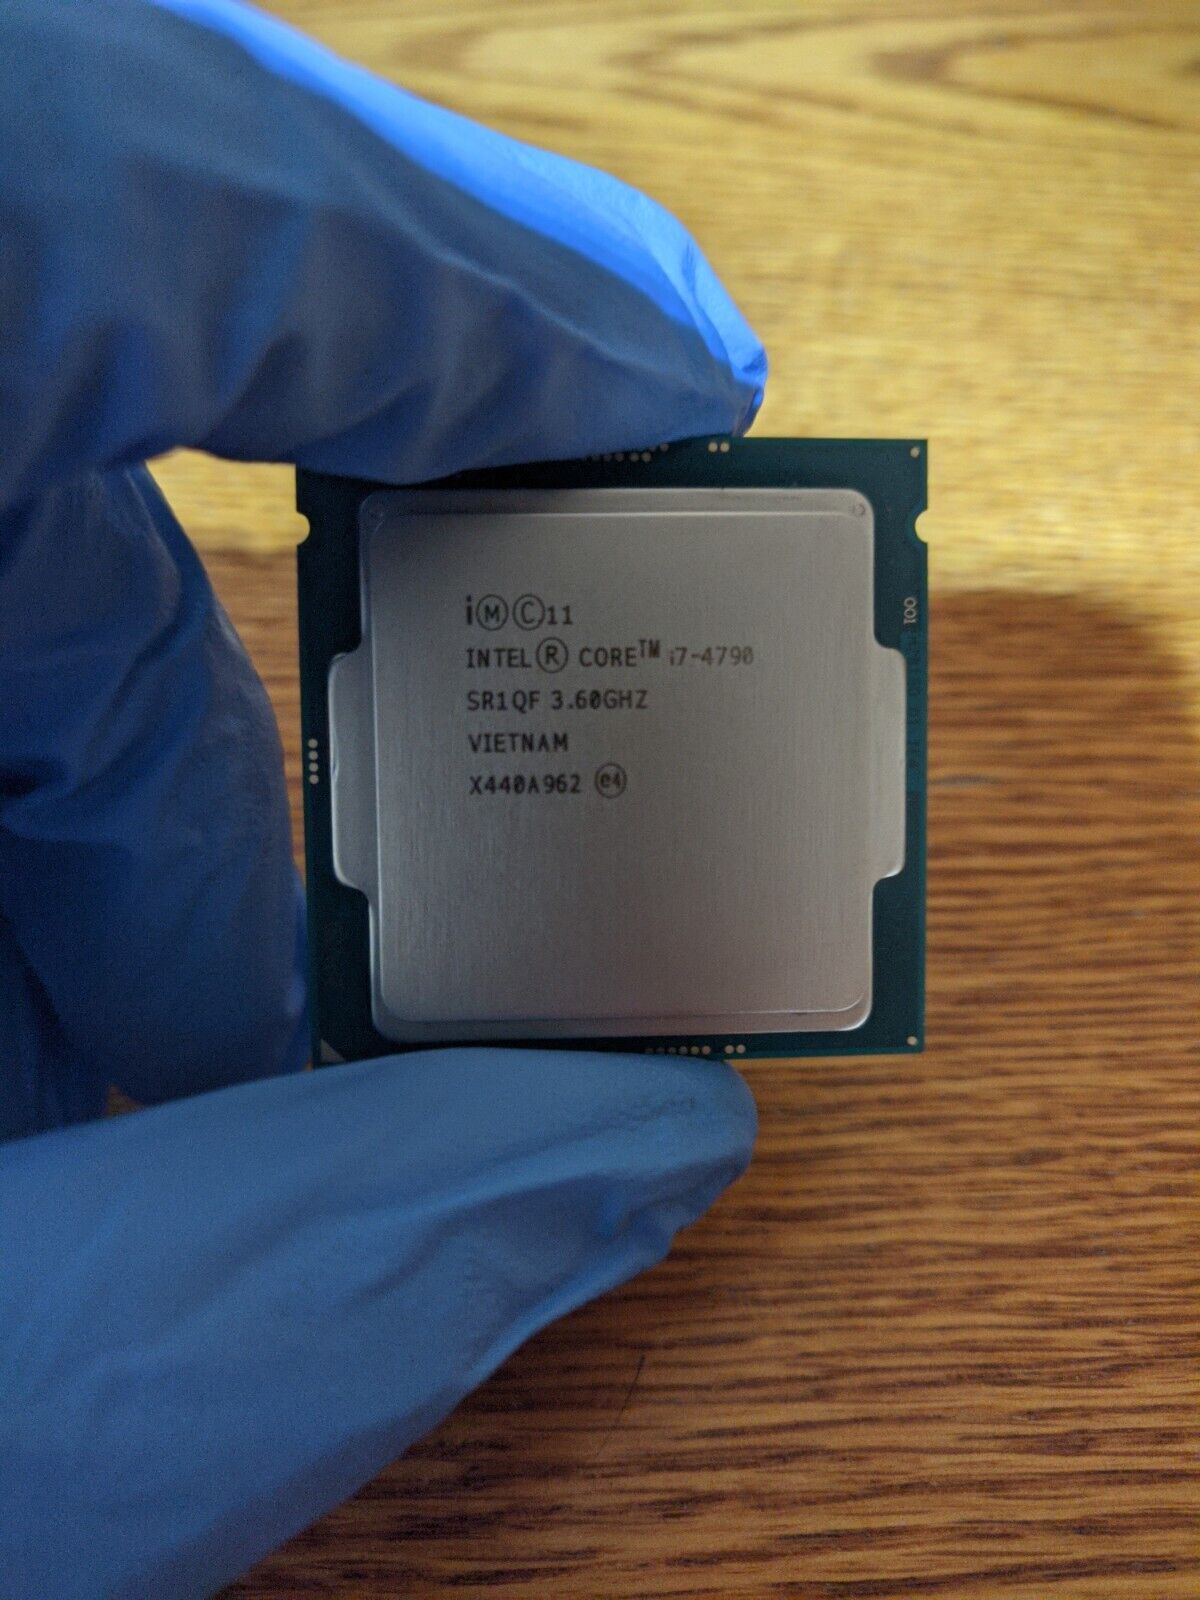 Intel Core i7-4790 Processor (4 GHz, 4 Cores, LGA 1156) - BX80646I74790